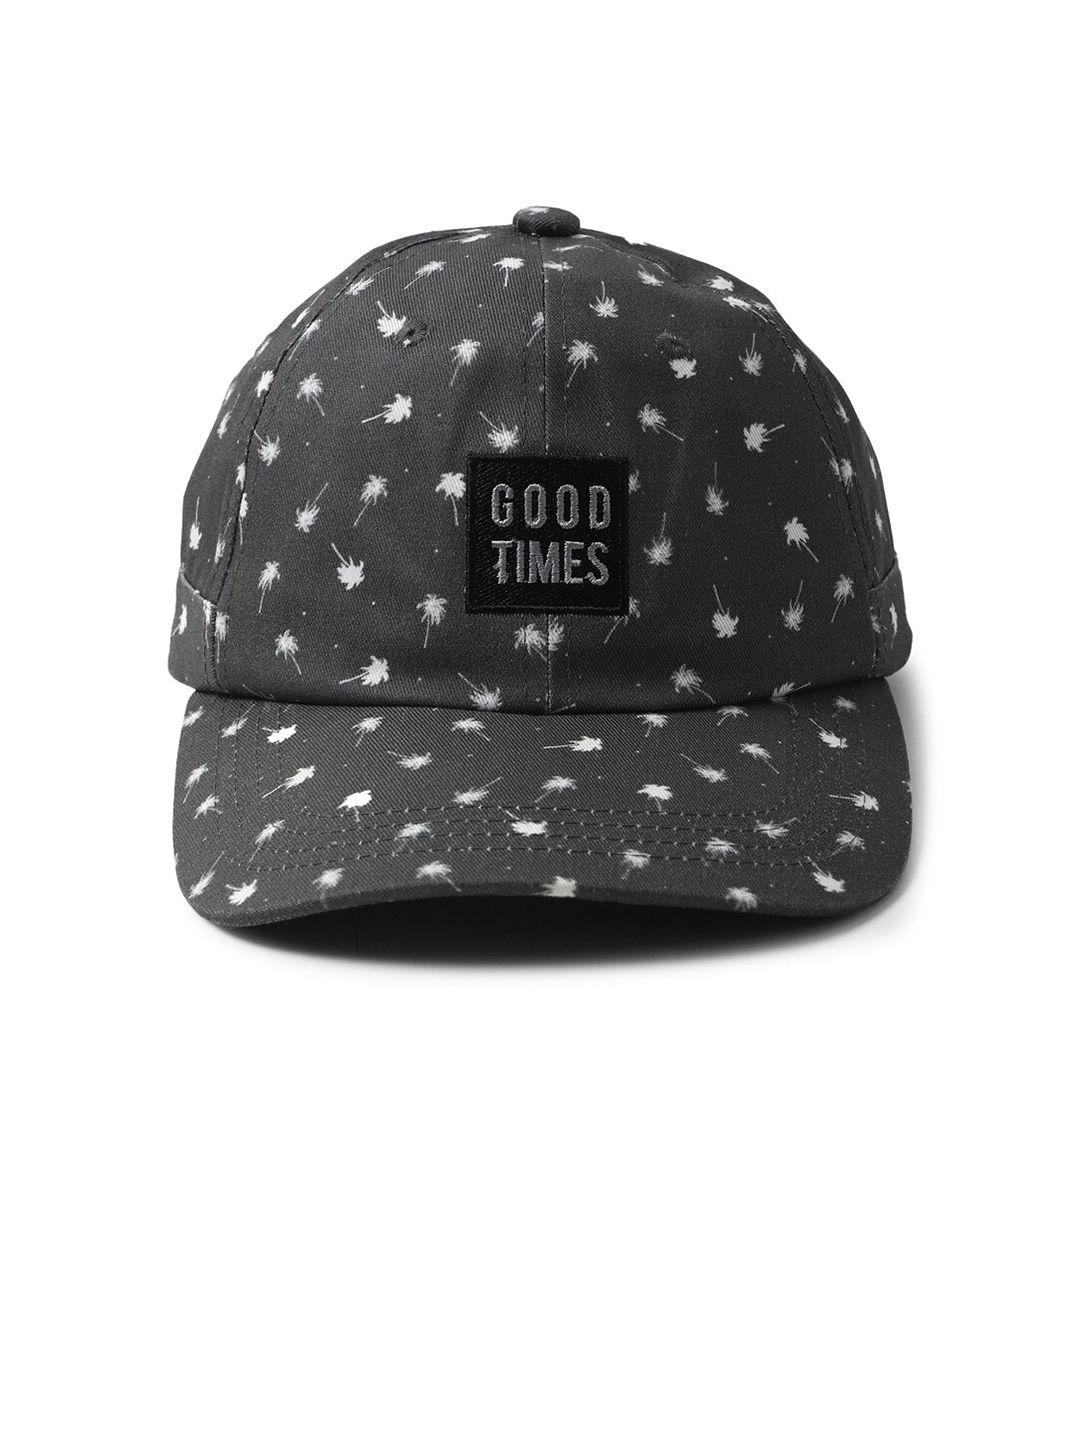 forever-21-men-black-&-white-printed-baseball-cap